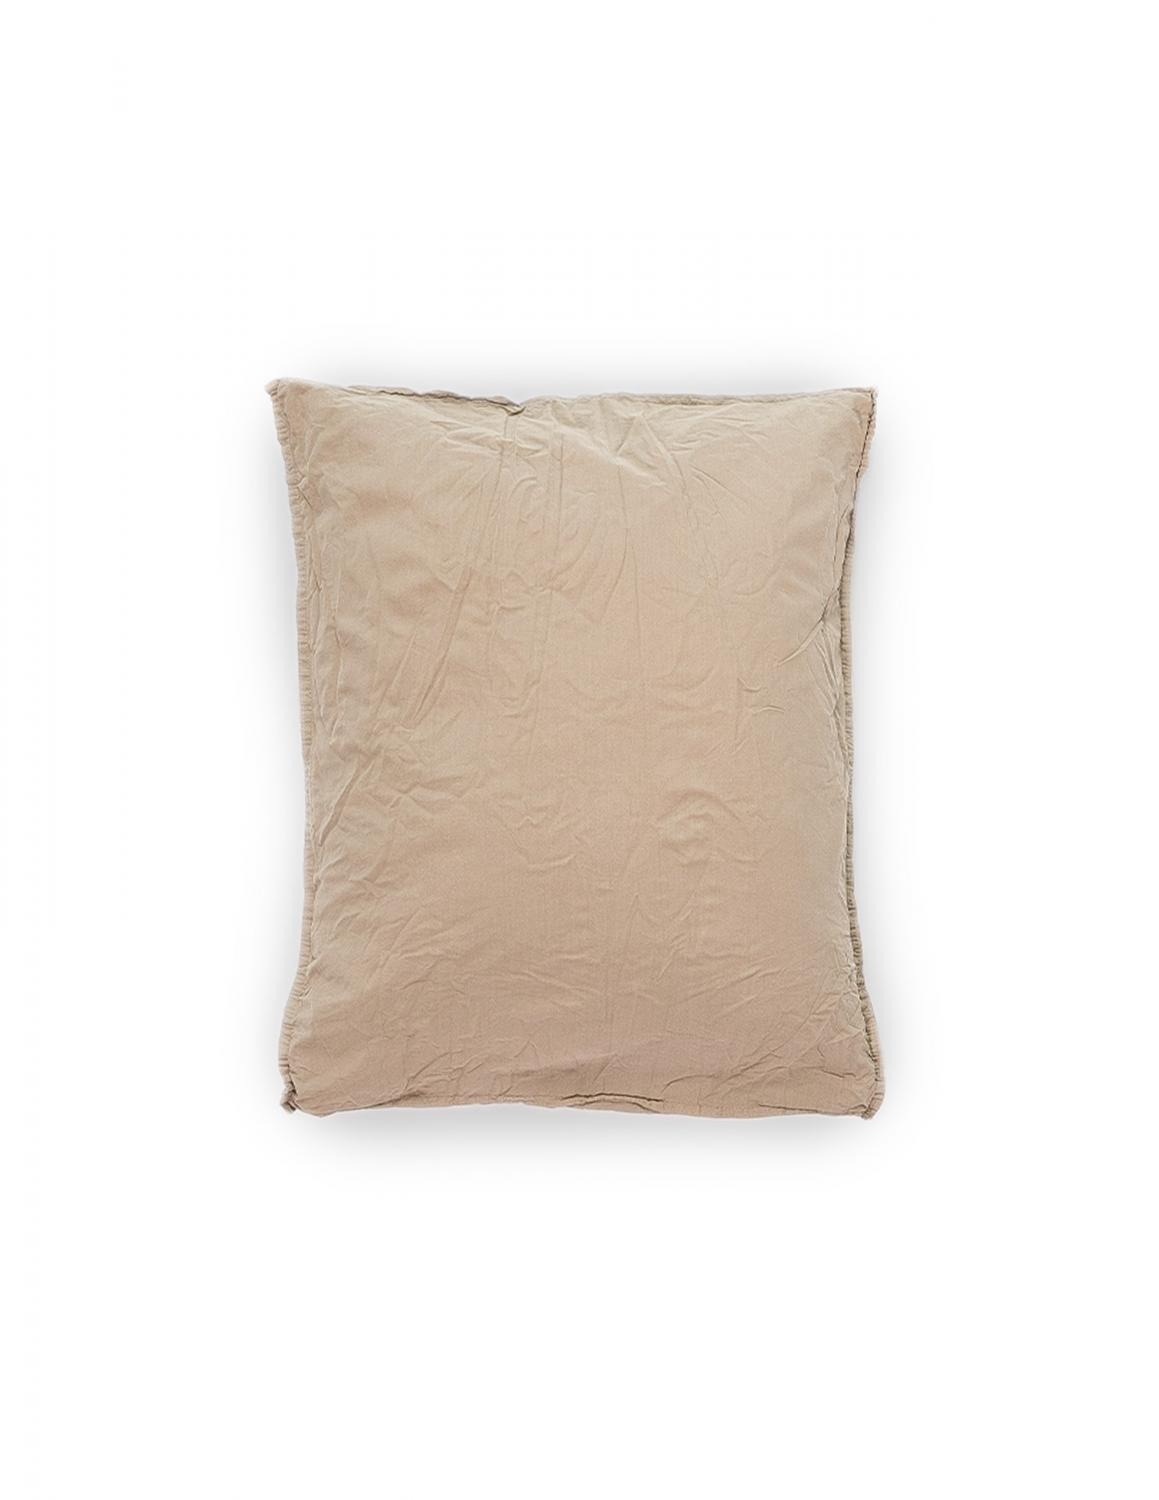 50x60cm Pillowcase Crinkle Nutmeg